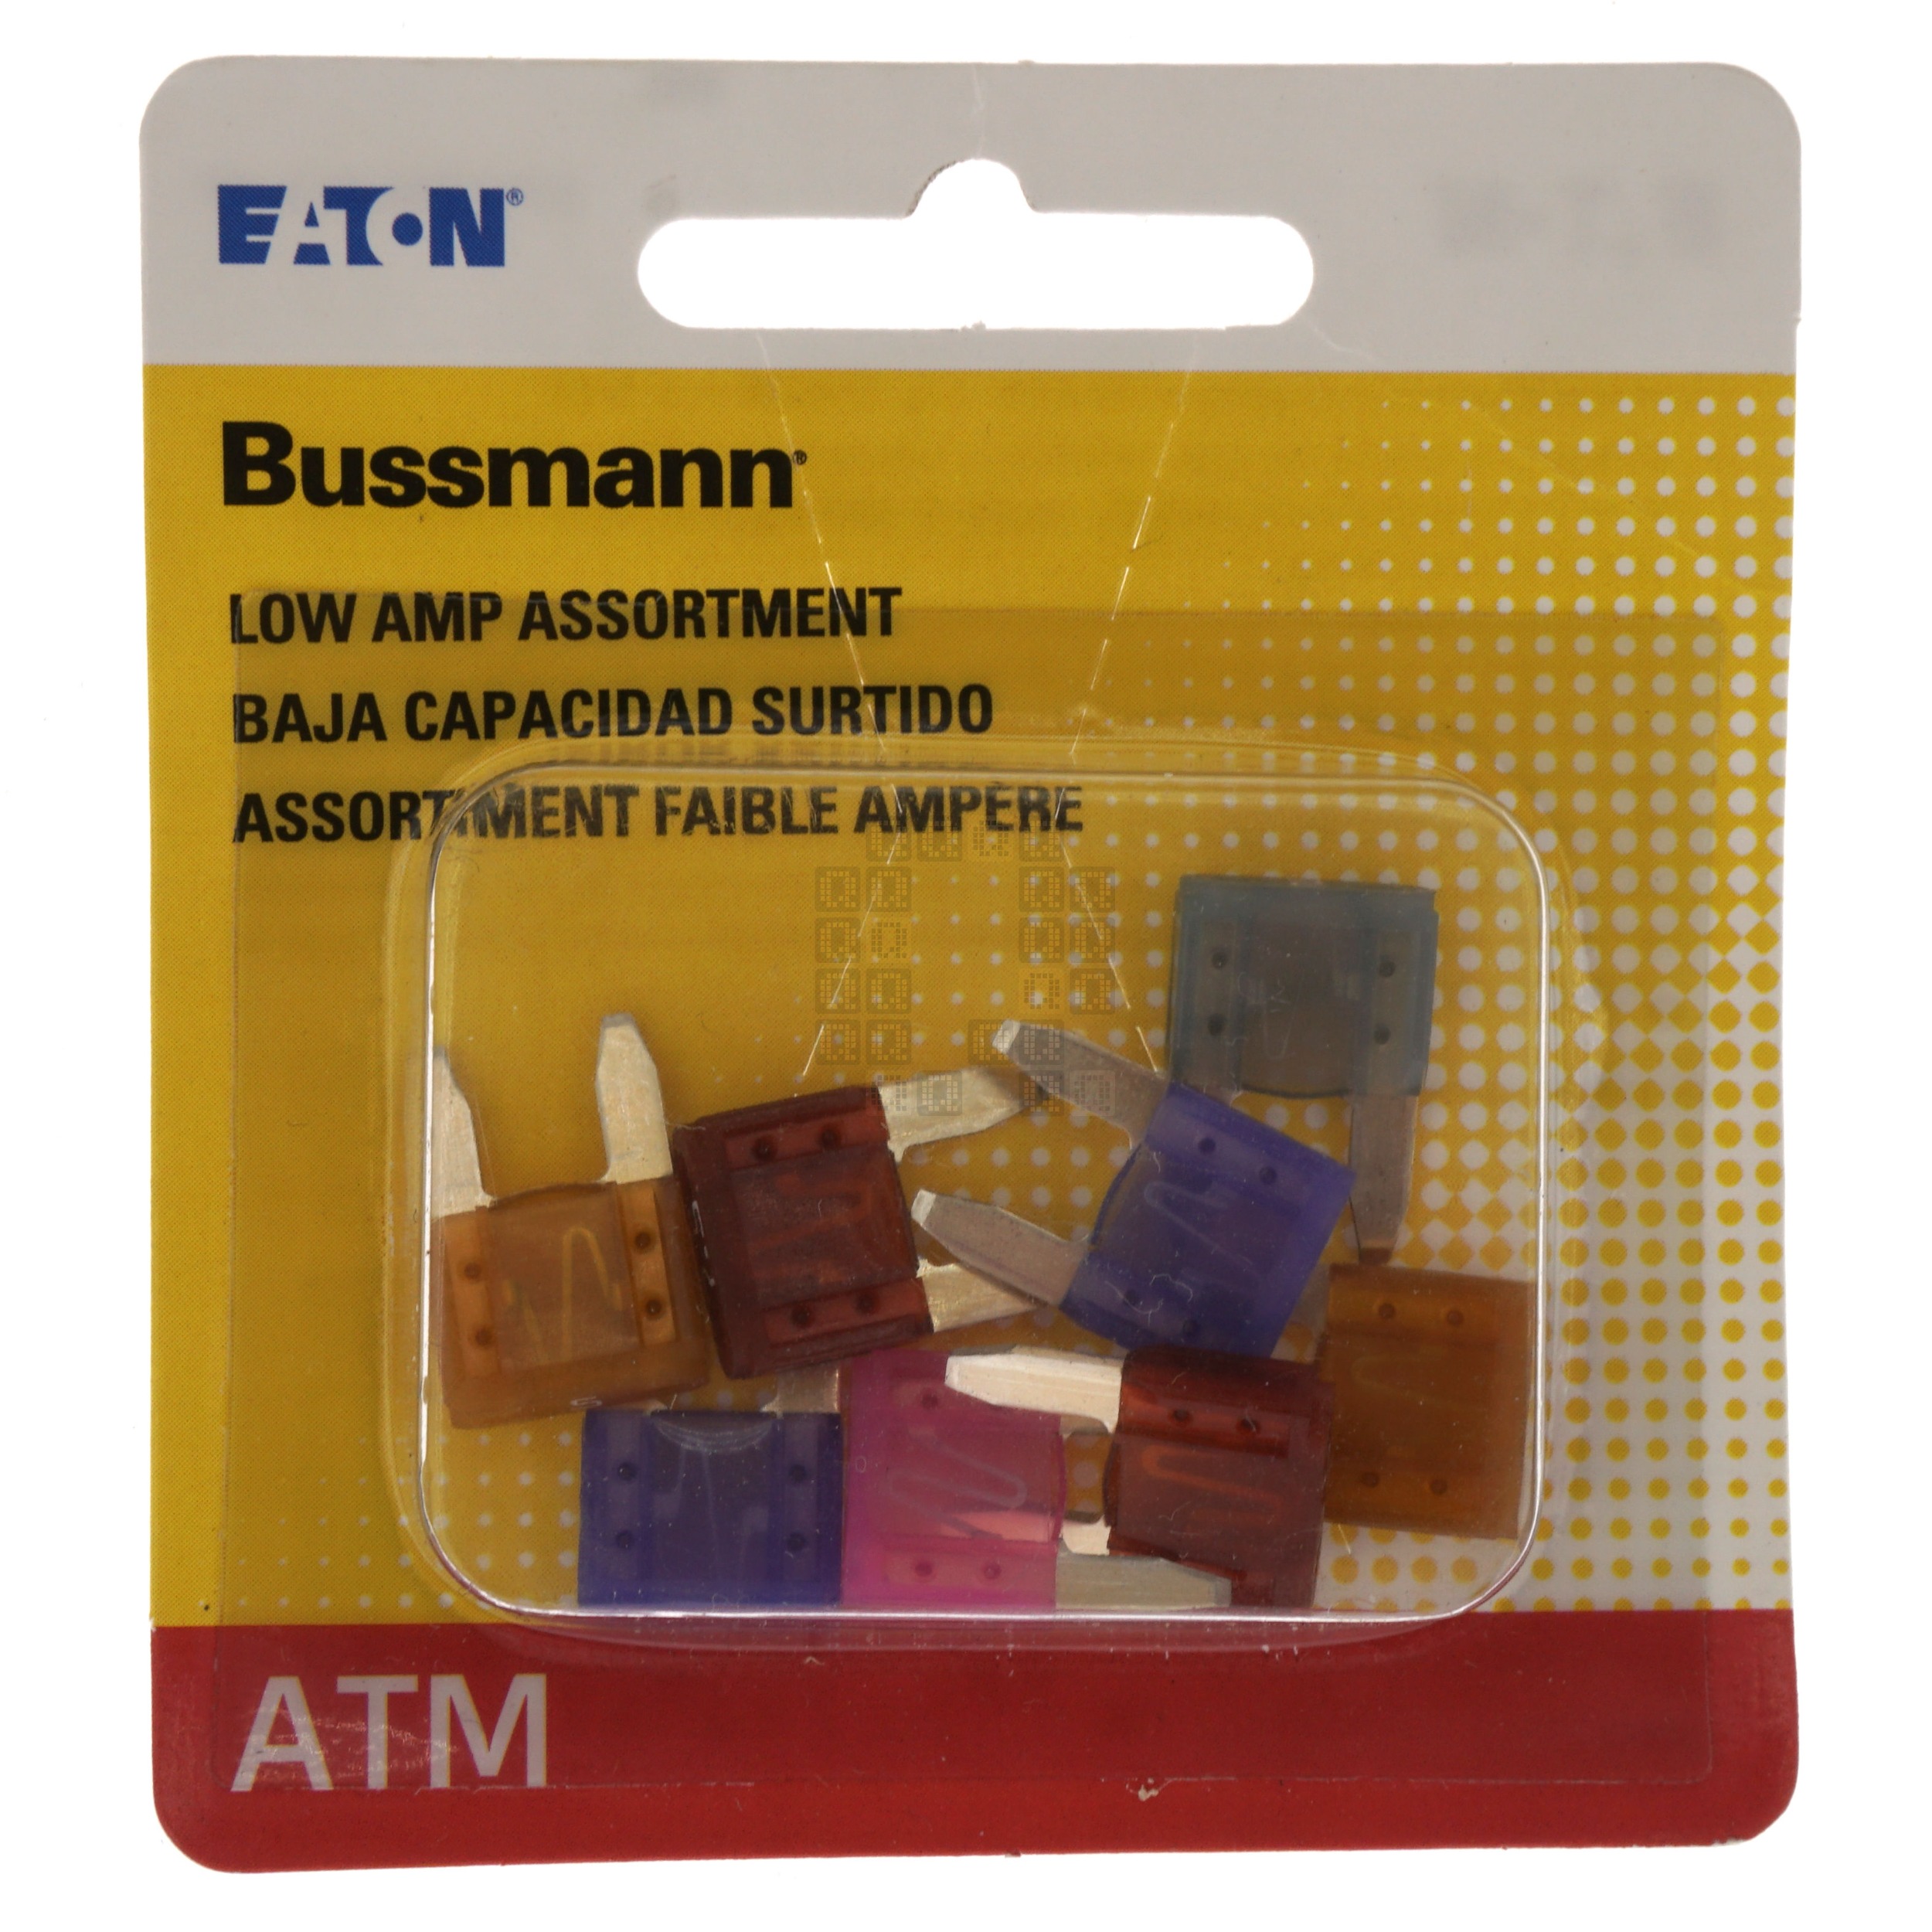 Eaton Bussmann BP/ATM-AL8-RP 8-Piece Low Amp Fuse Assortment